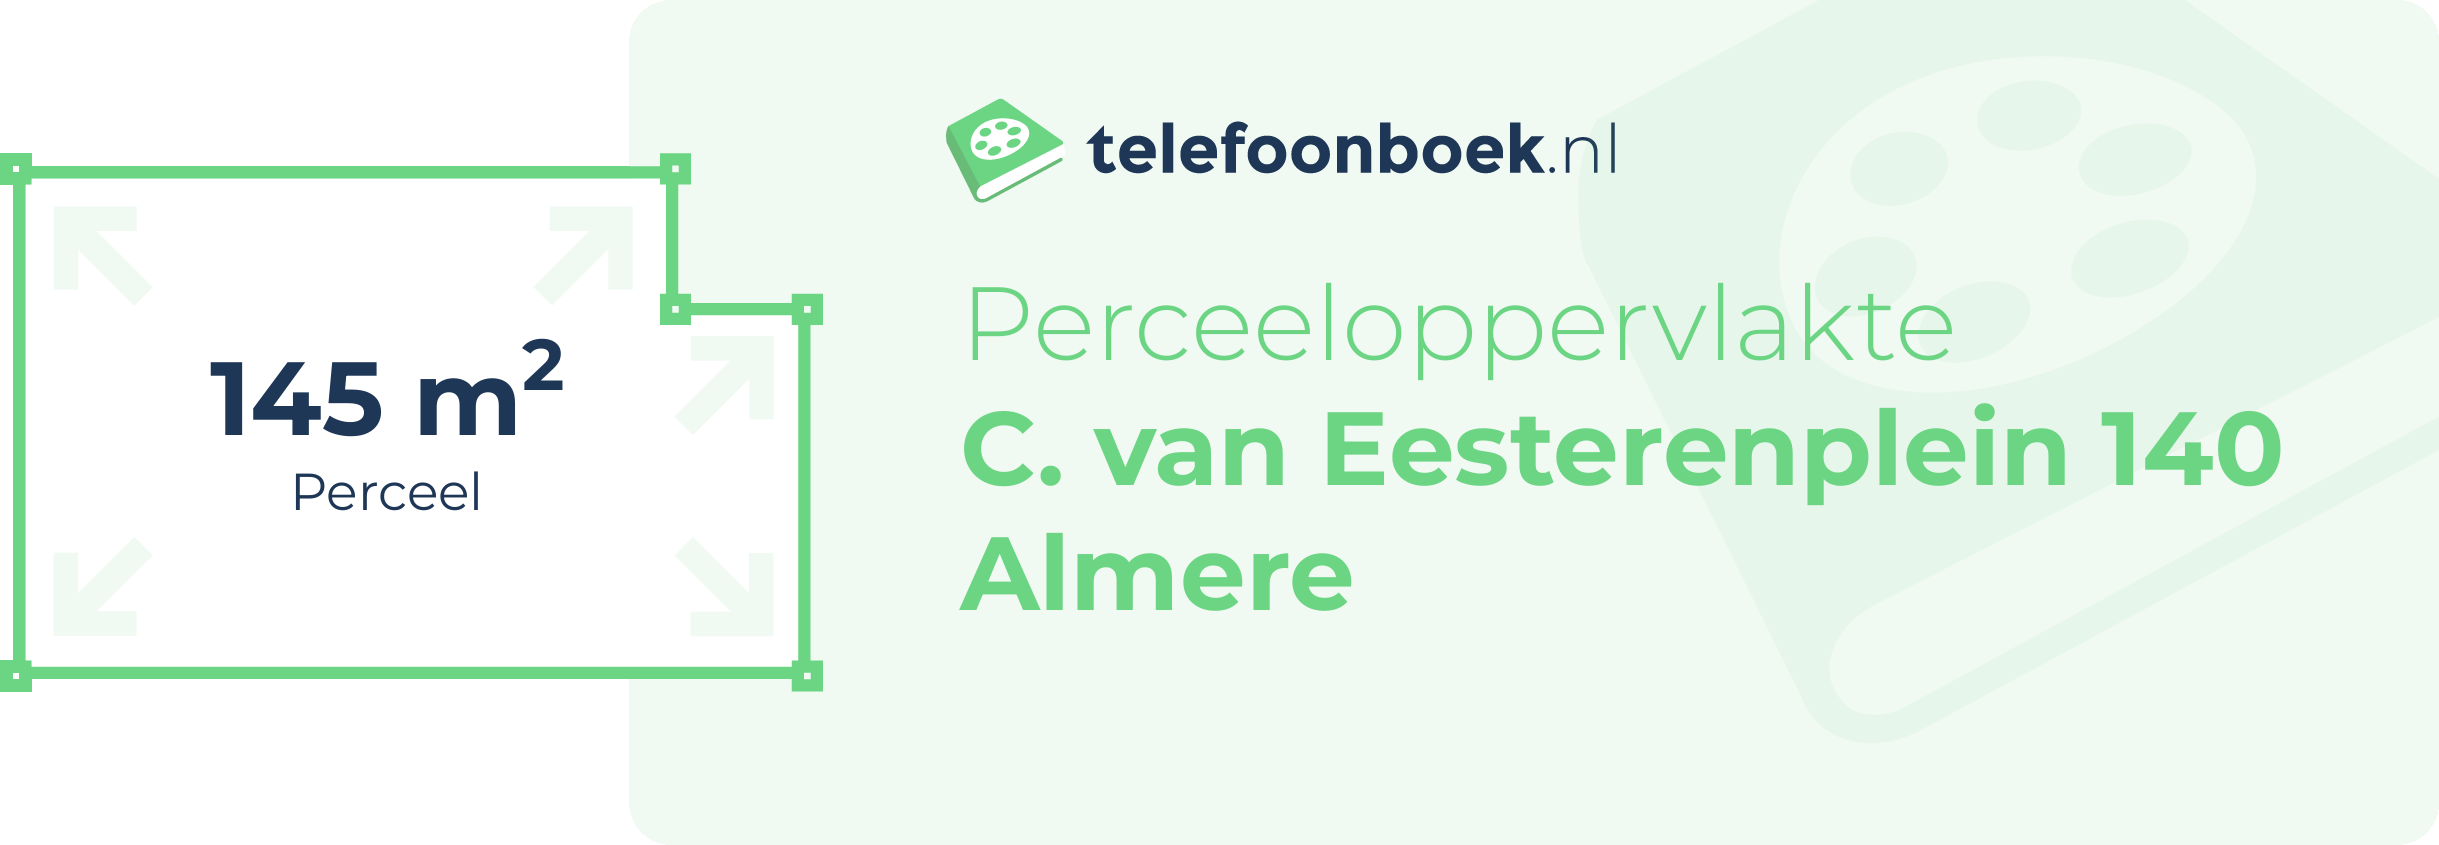 Perceeloppervlakte C. Van Eesterenplein 140 Almere